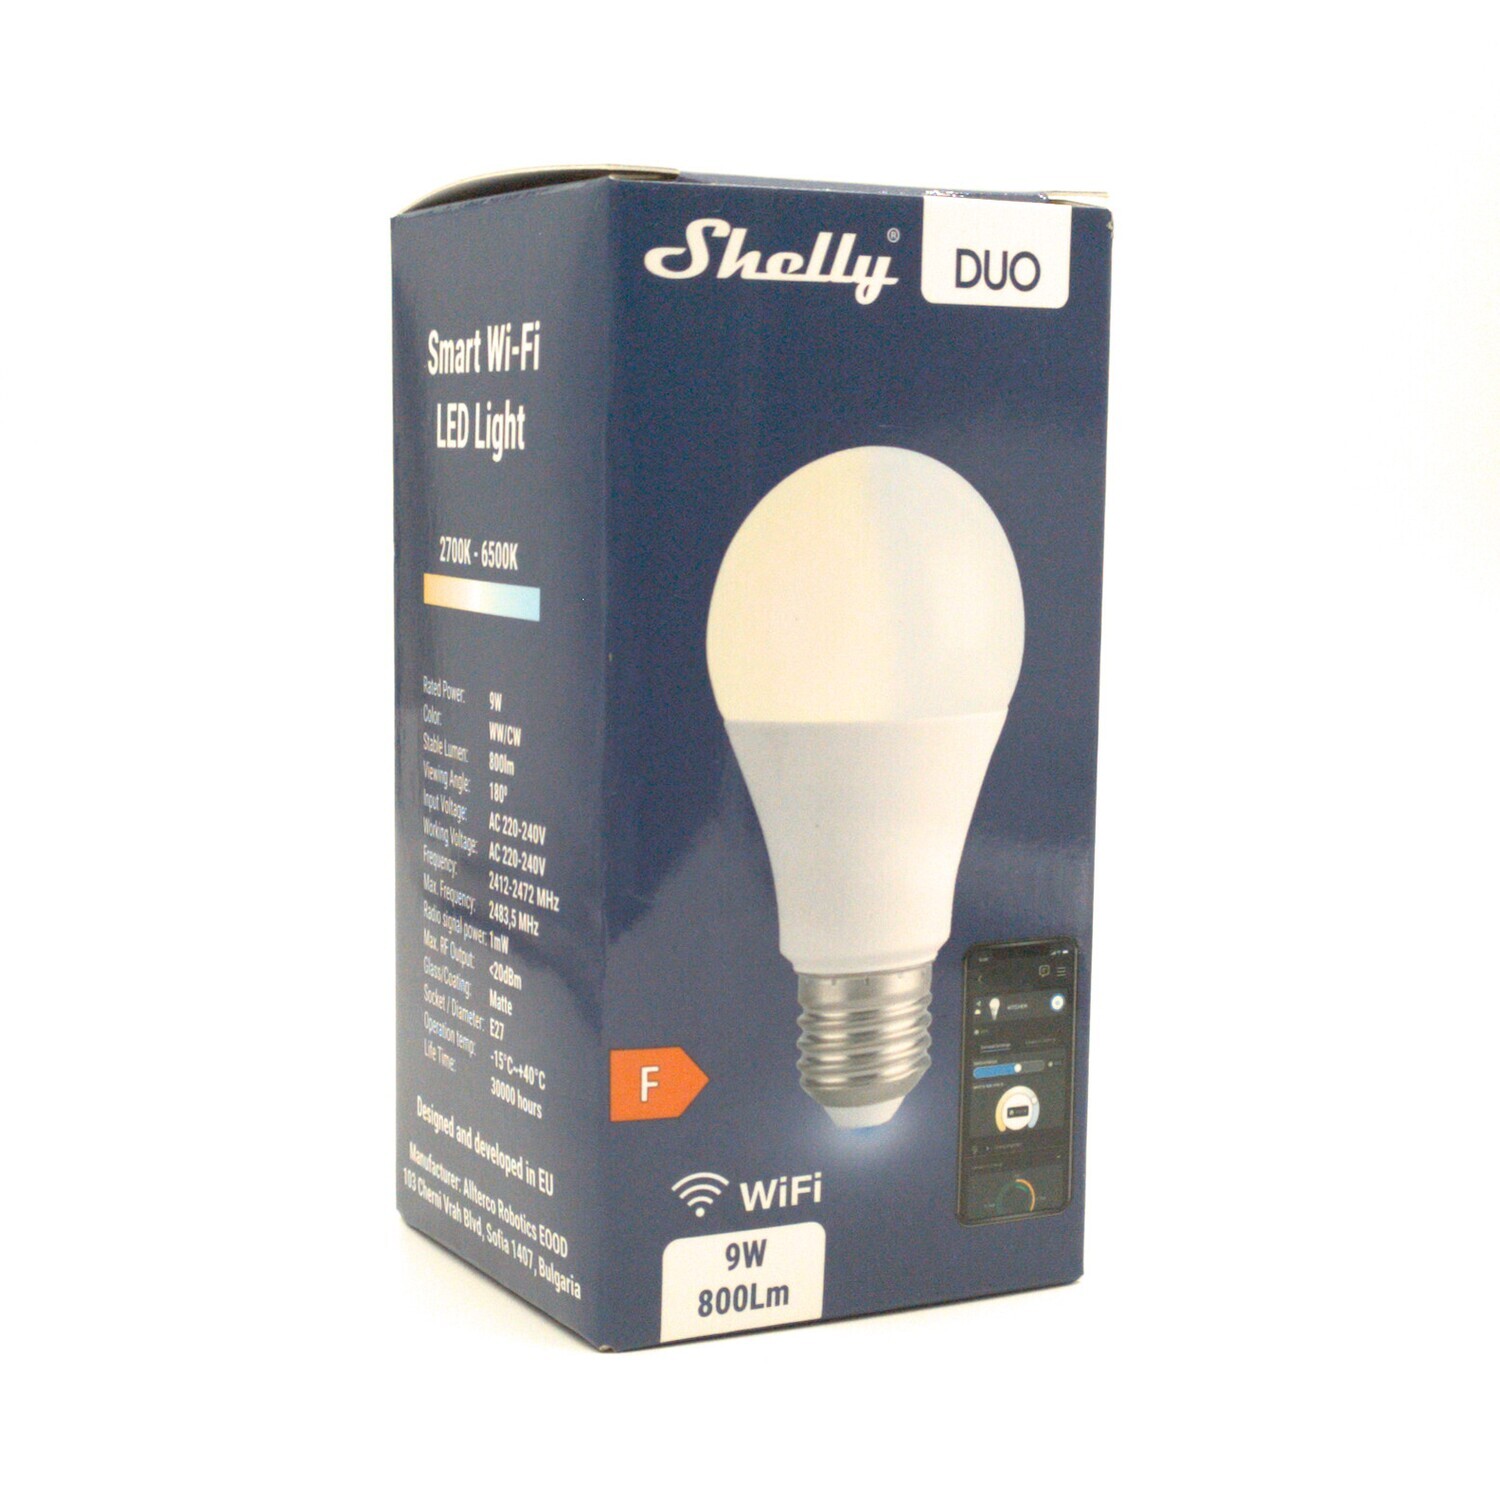 Shelly Duo - 9W/800lm/E27 WiFi-lamppu säädettävällä värilämpötilalla